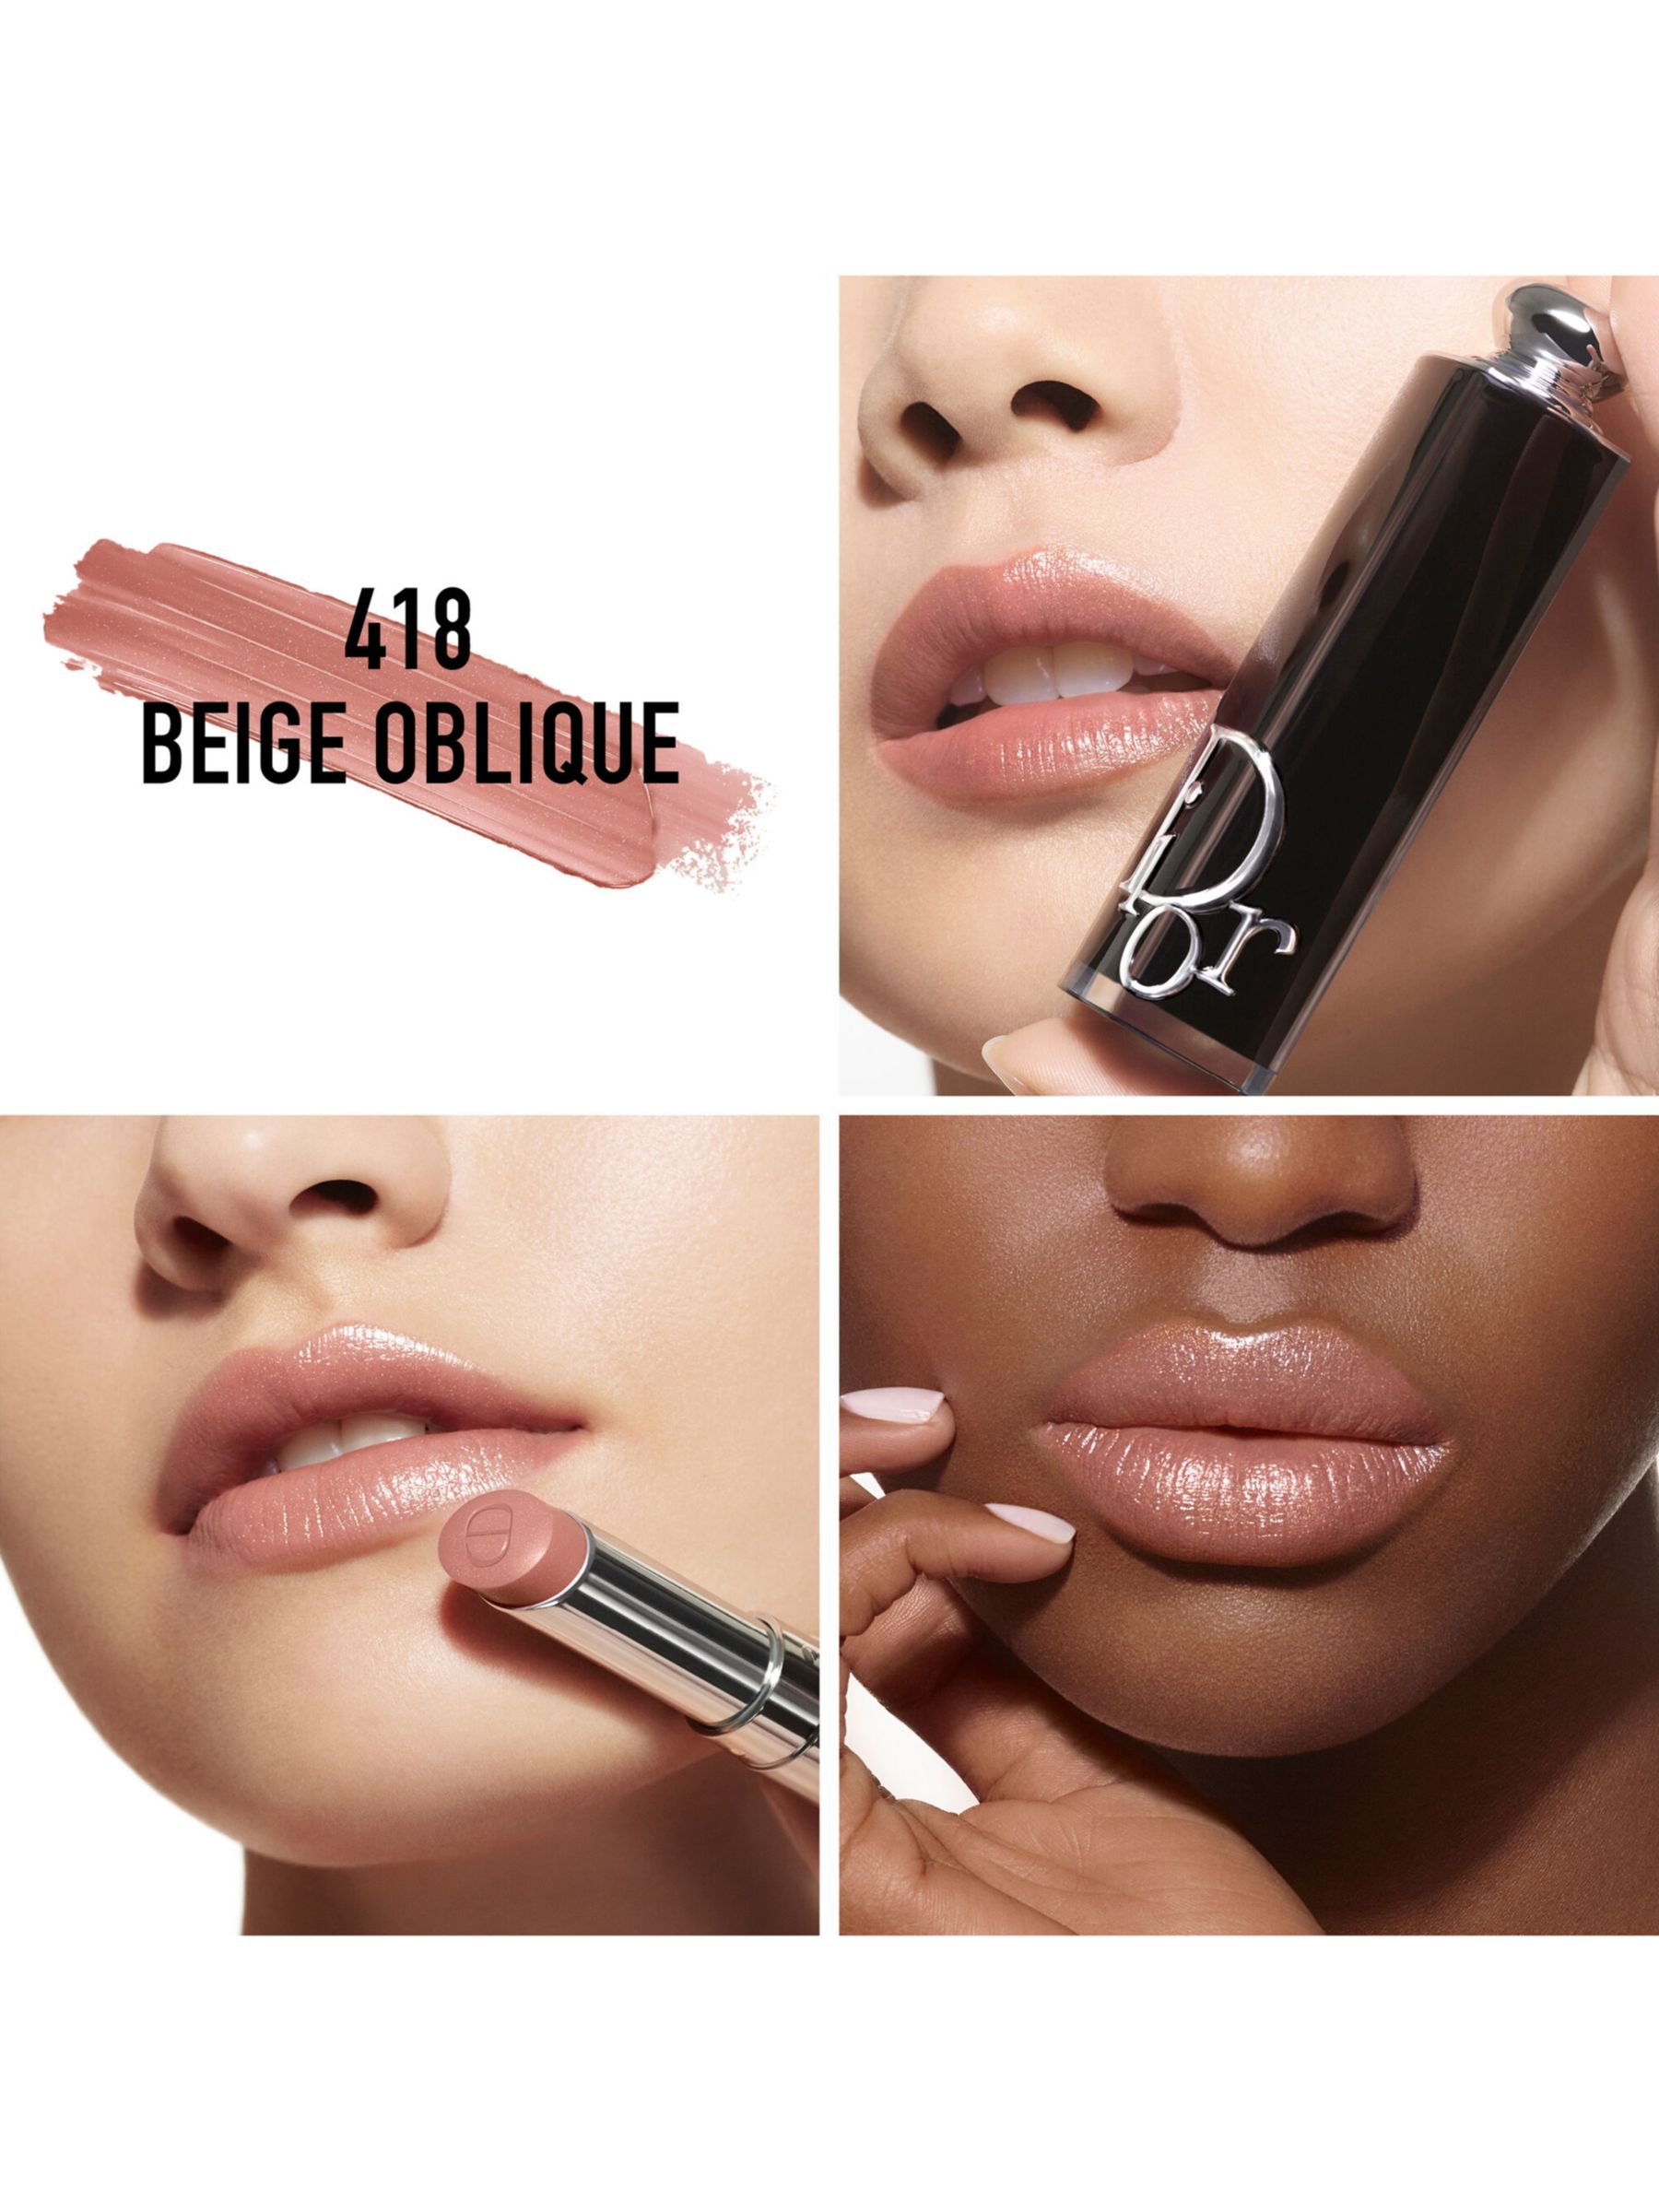 DIOR Addict Shine Refillable Lipstick, 418 Beige Oblique 2